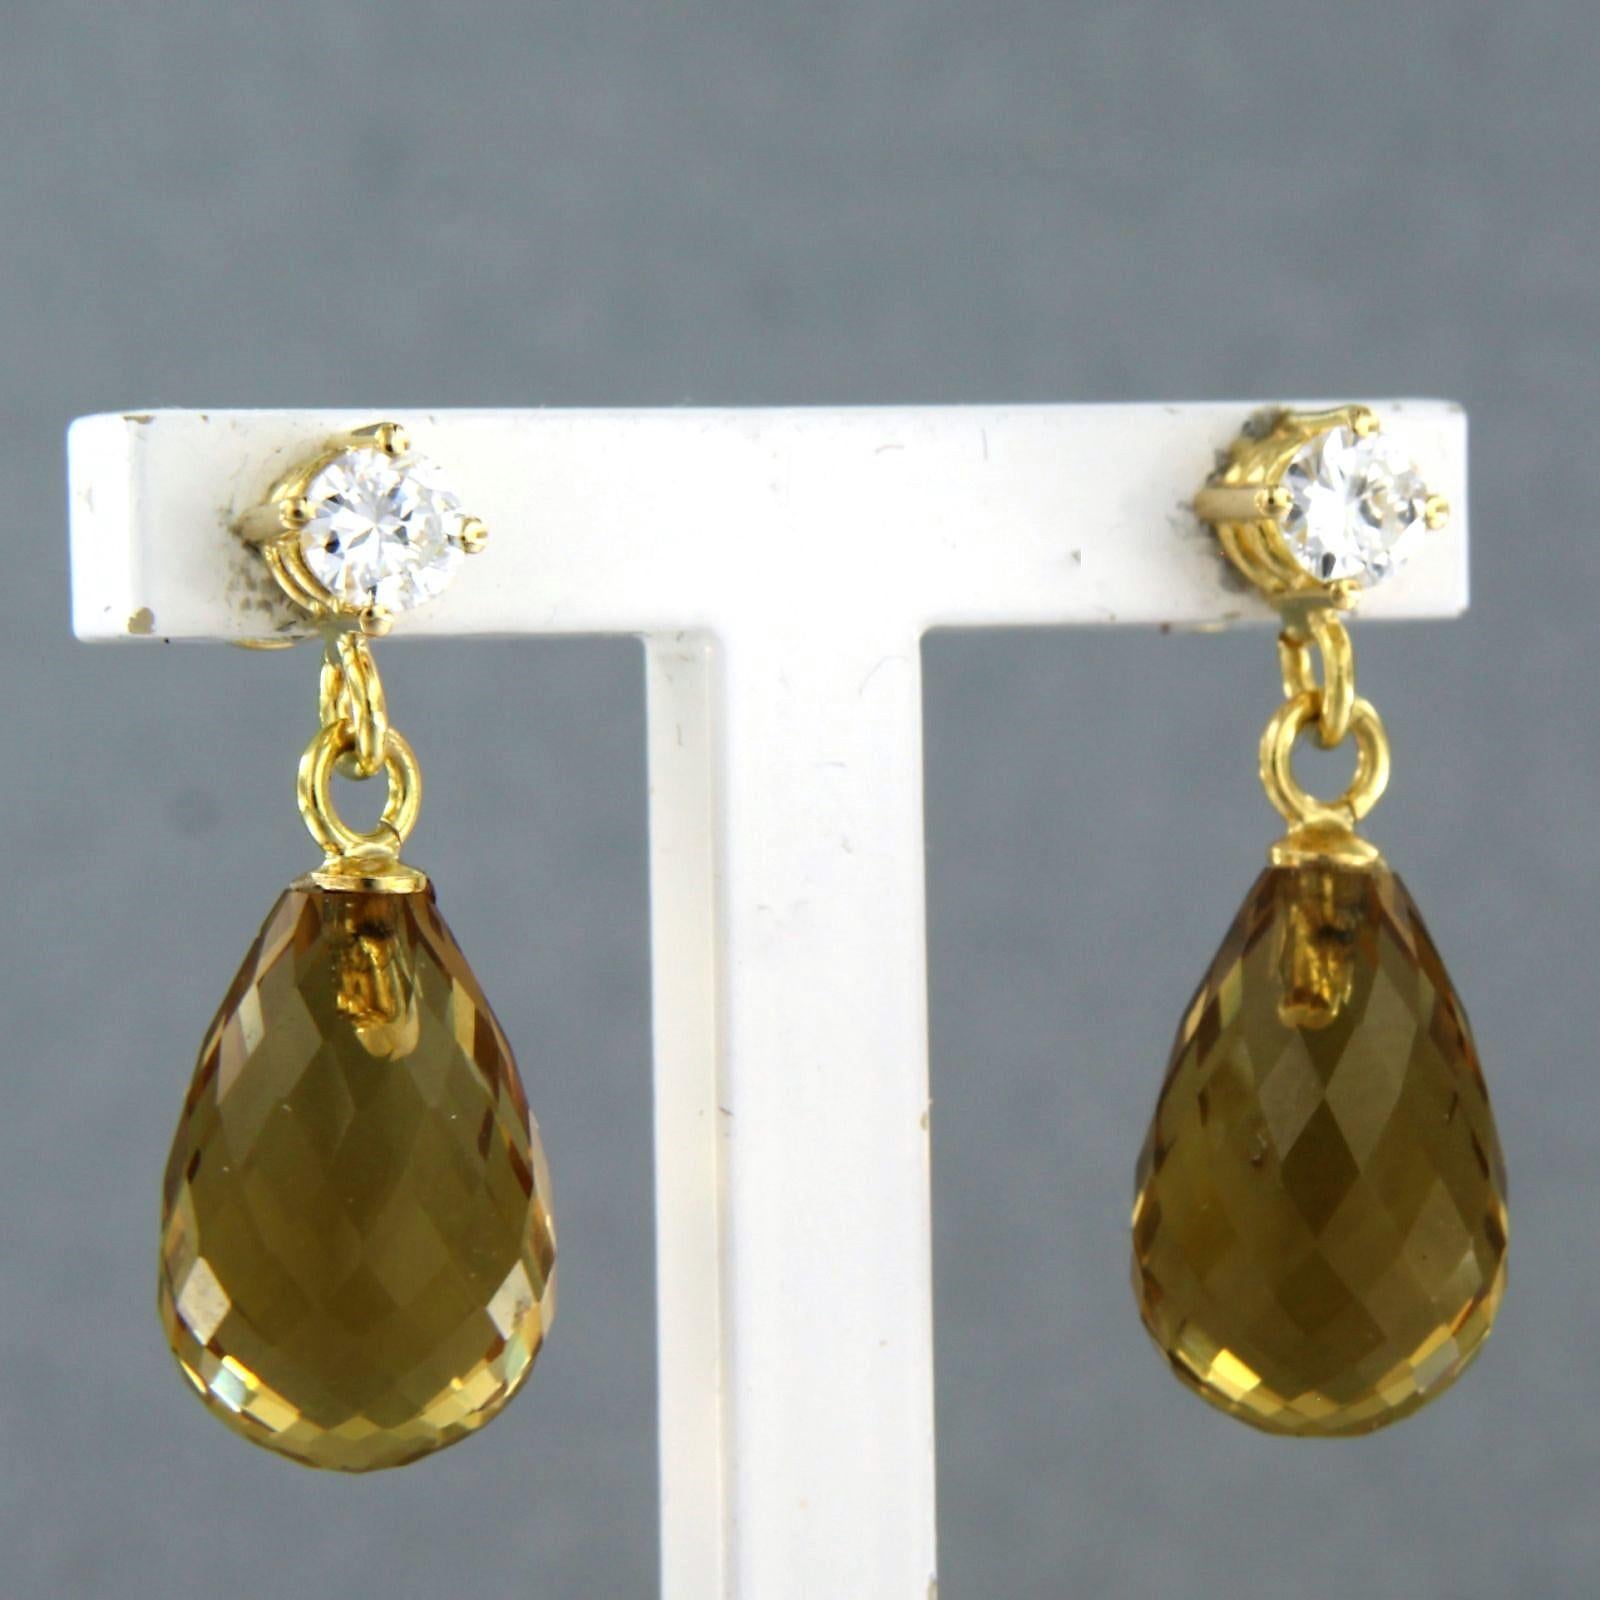 Ohrringe aus 18 Karat Gelbgold mit gelbem Citrin und Diamanten besetzt (Brillantschliff)